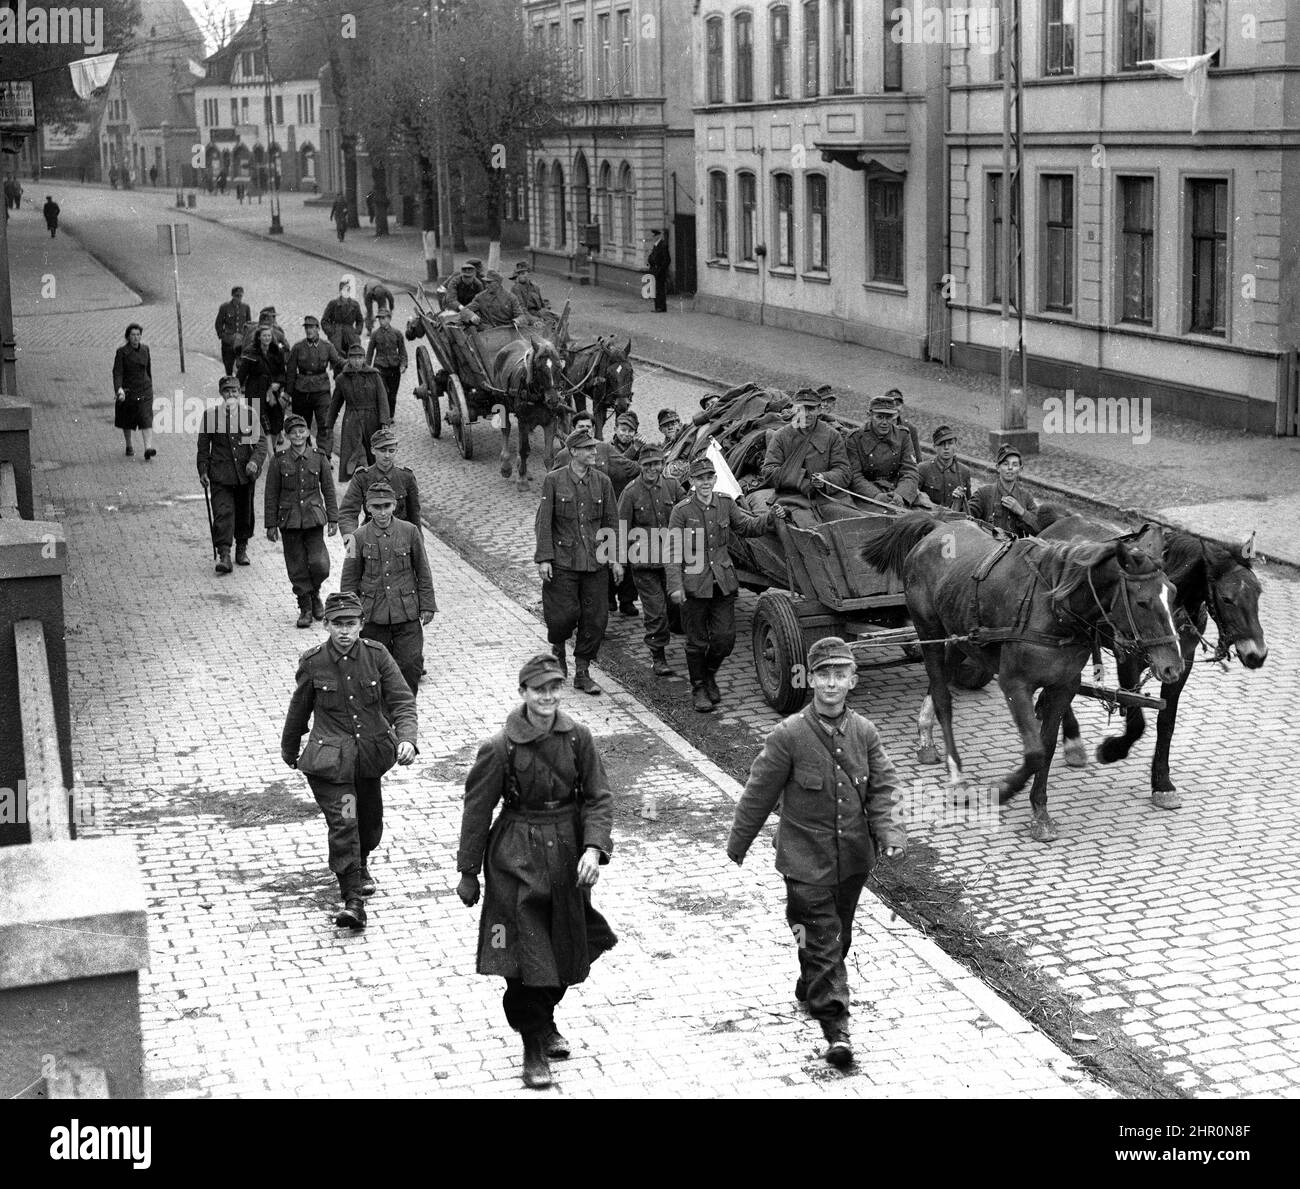 Germania seconda guerra mondiale 1945. Soldati dell'esercito tedesco la maggior parte di loro molto giovane sorridendo mentre ritornano a casa sconfitti con una bandiera di resa bianca sul loro cavallo e carretto. Bandiere bianche possono anche essere viste drapped da alcuni dei buidlings. Foto Stock